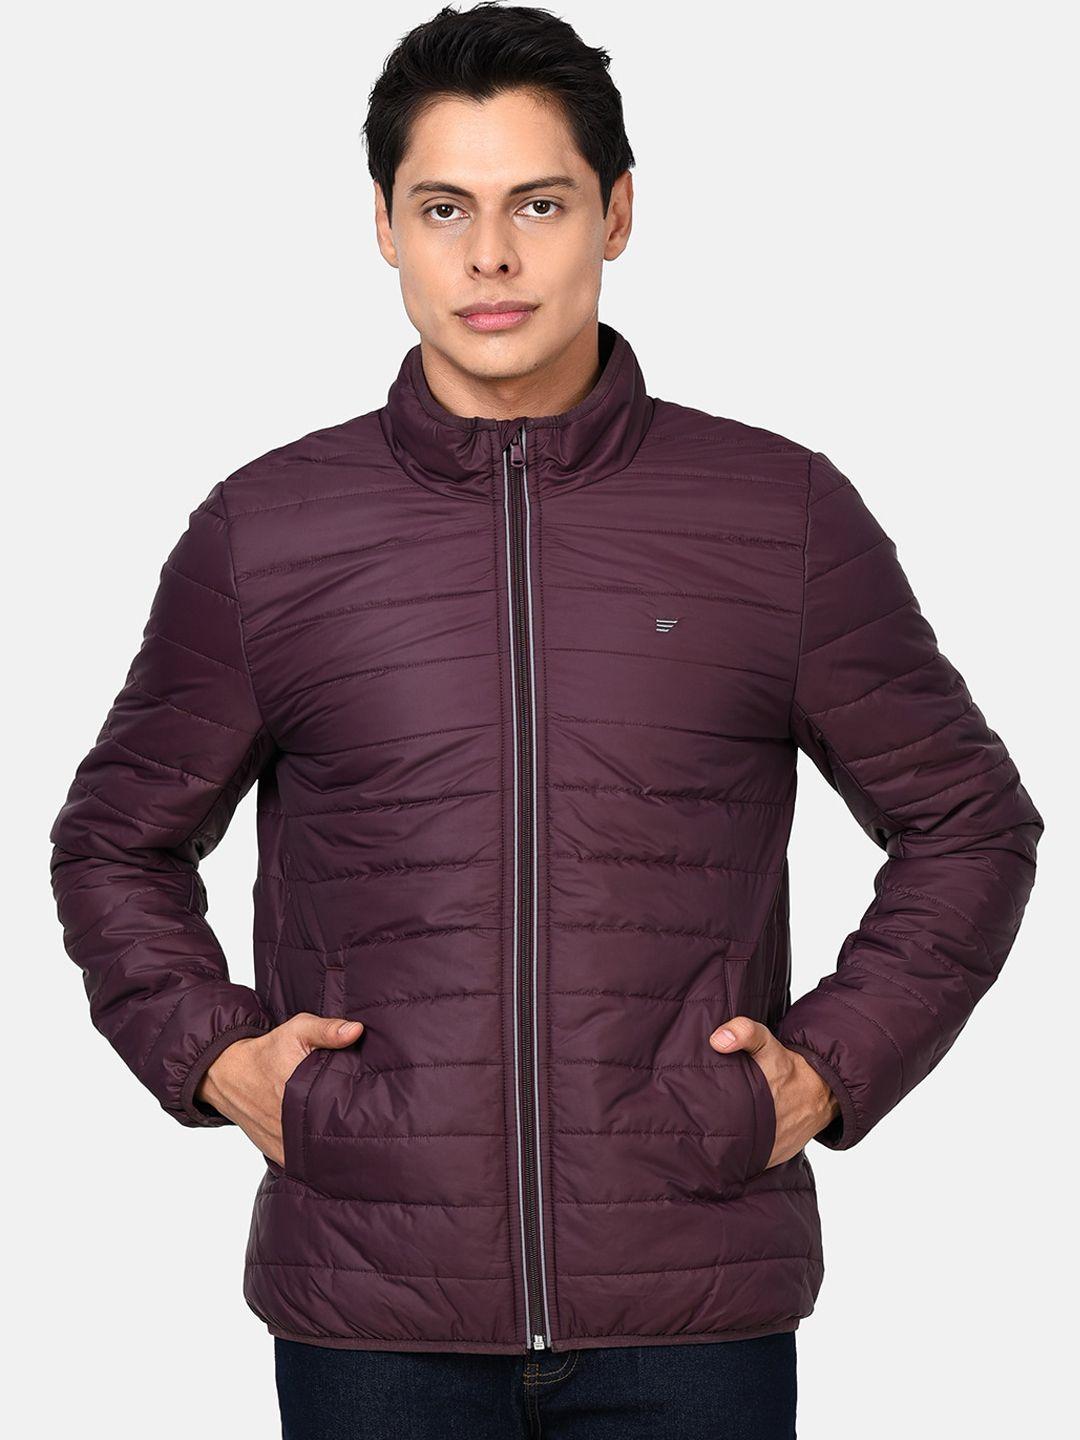 t-base men burgundy lightweight puffer jacket